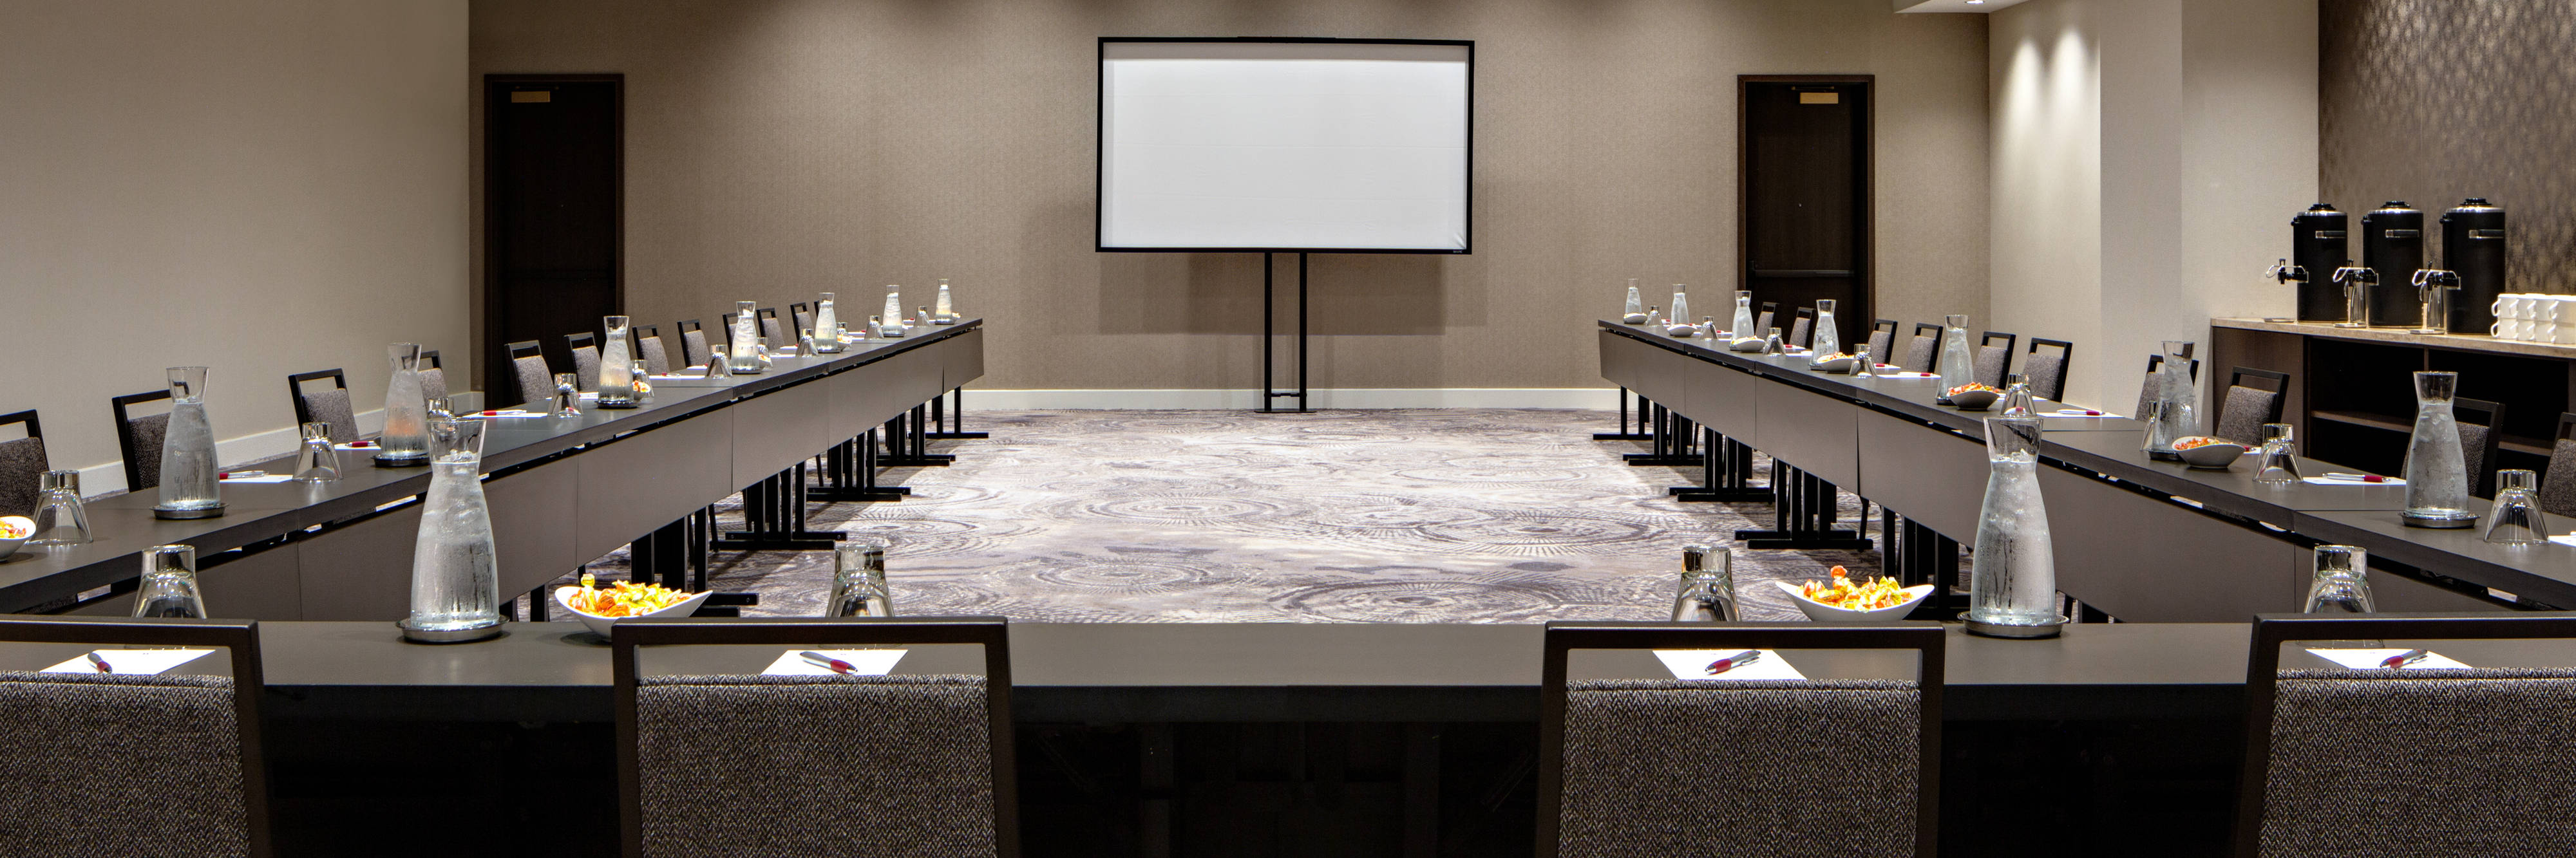 Meeting room U shape table